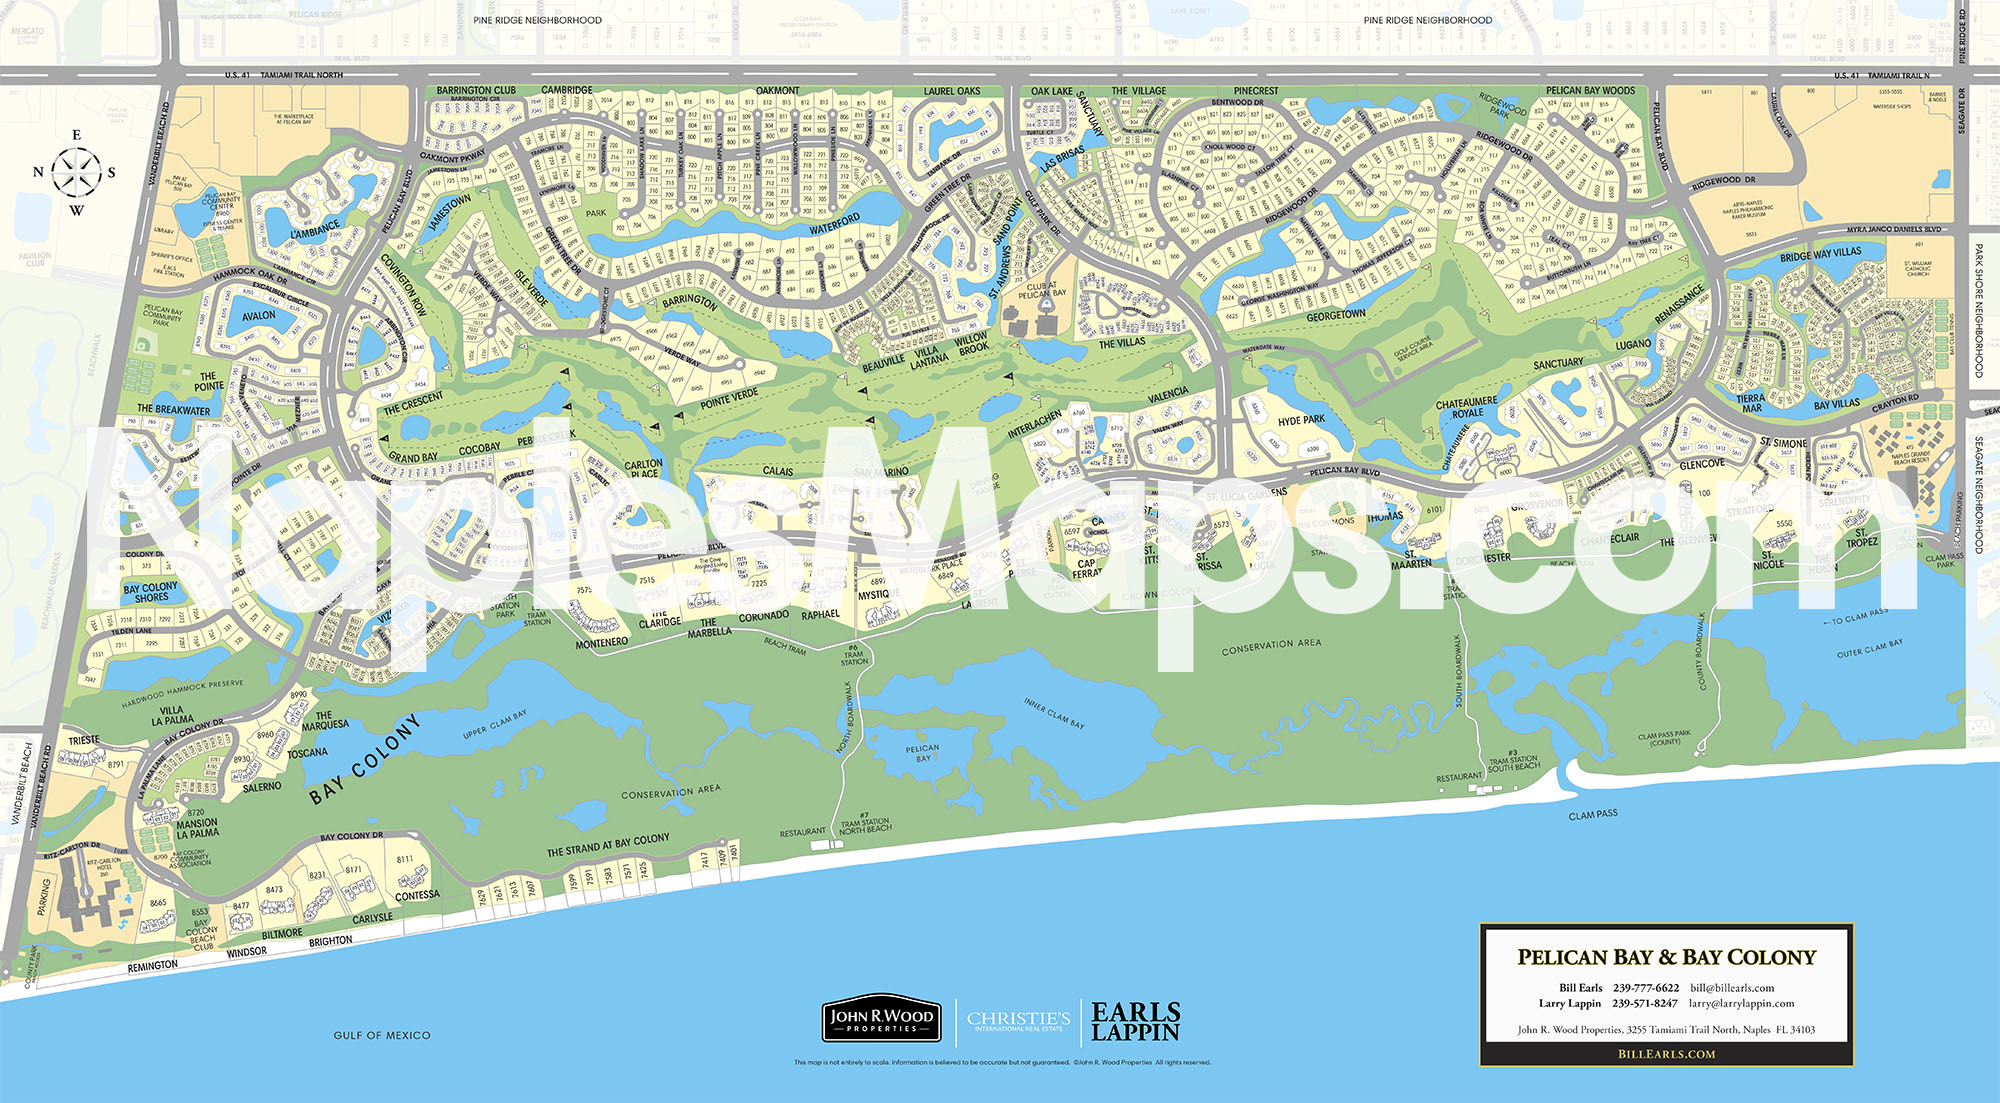 Park Shore Waterfront Map